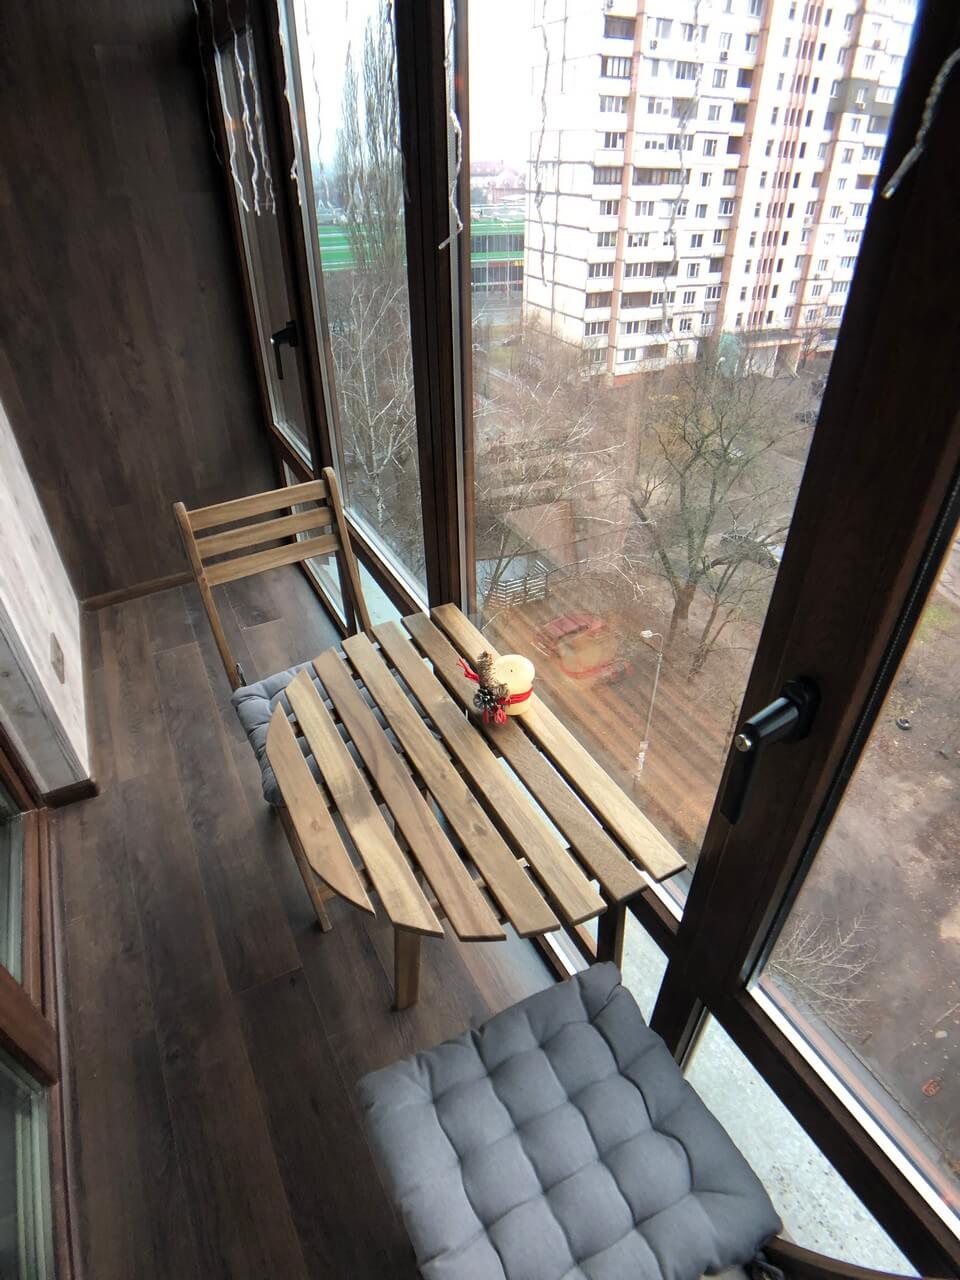 Французский балкон с отделкой ламинат в чешке. Киев, ул. Зодчих, 40 11